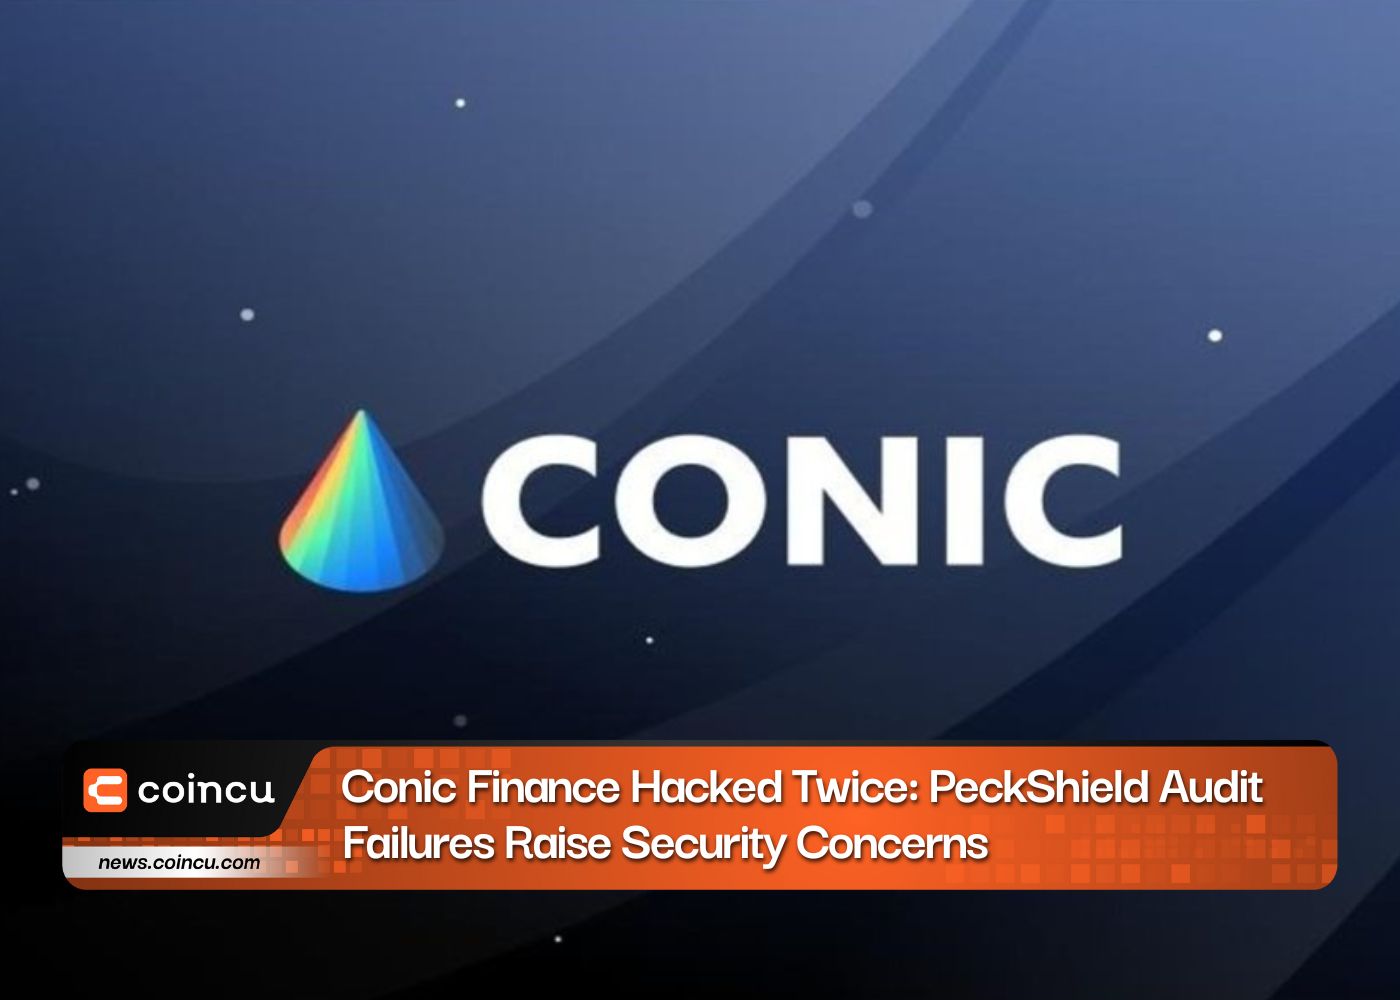 Conic Finance が XNUMX 度ハッキングされる: PeckShield の監査失敗によりセキュリティ上の懸念が高まる